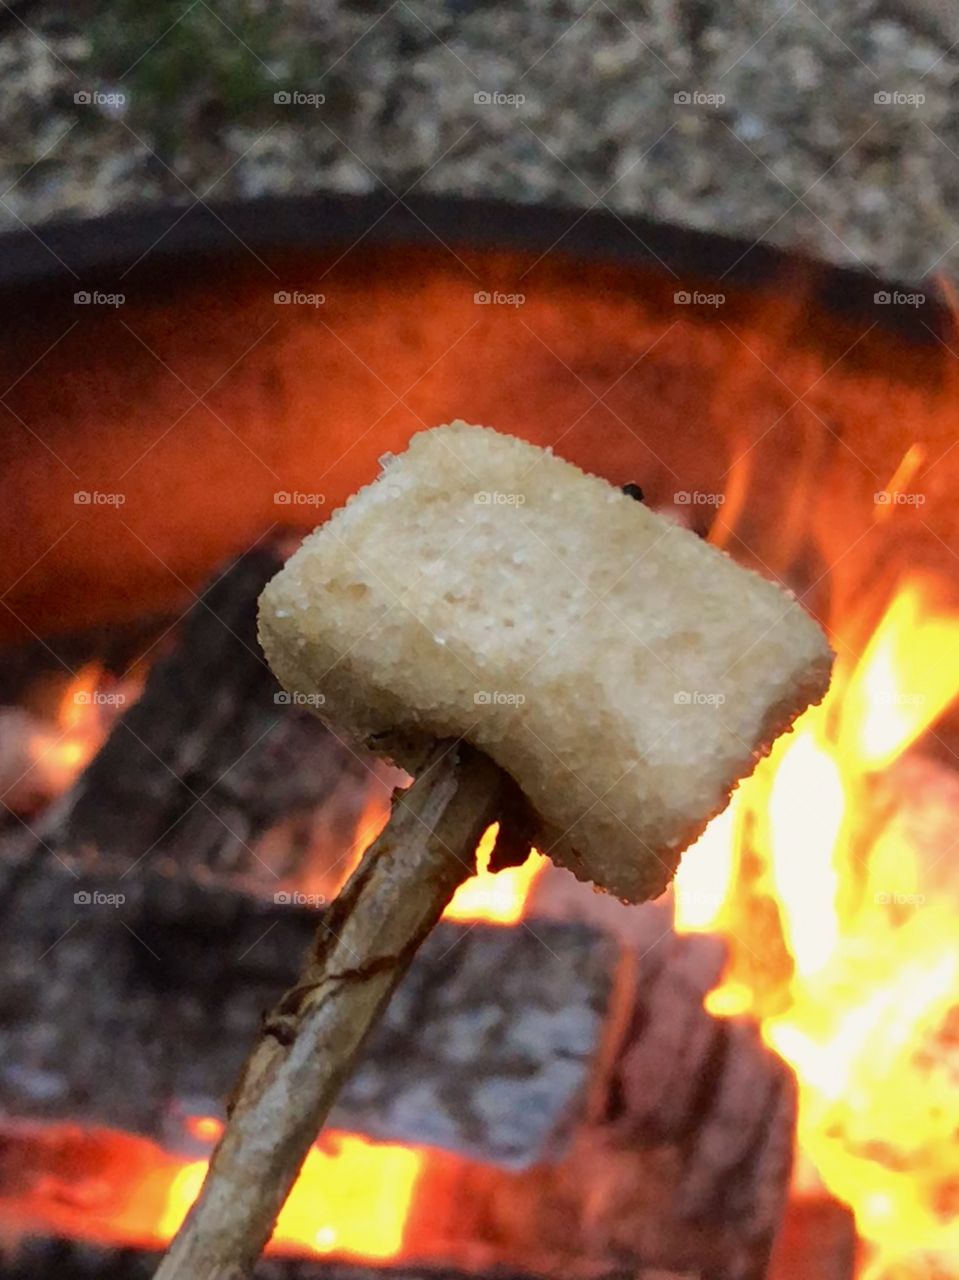 Cinnamon marshmallow smash!! ROASTED!!